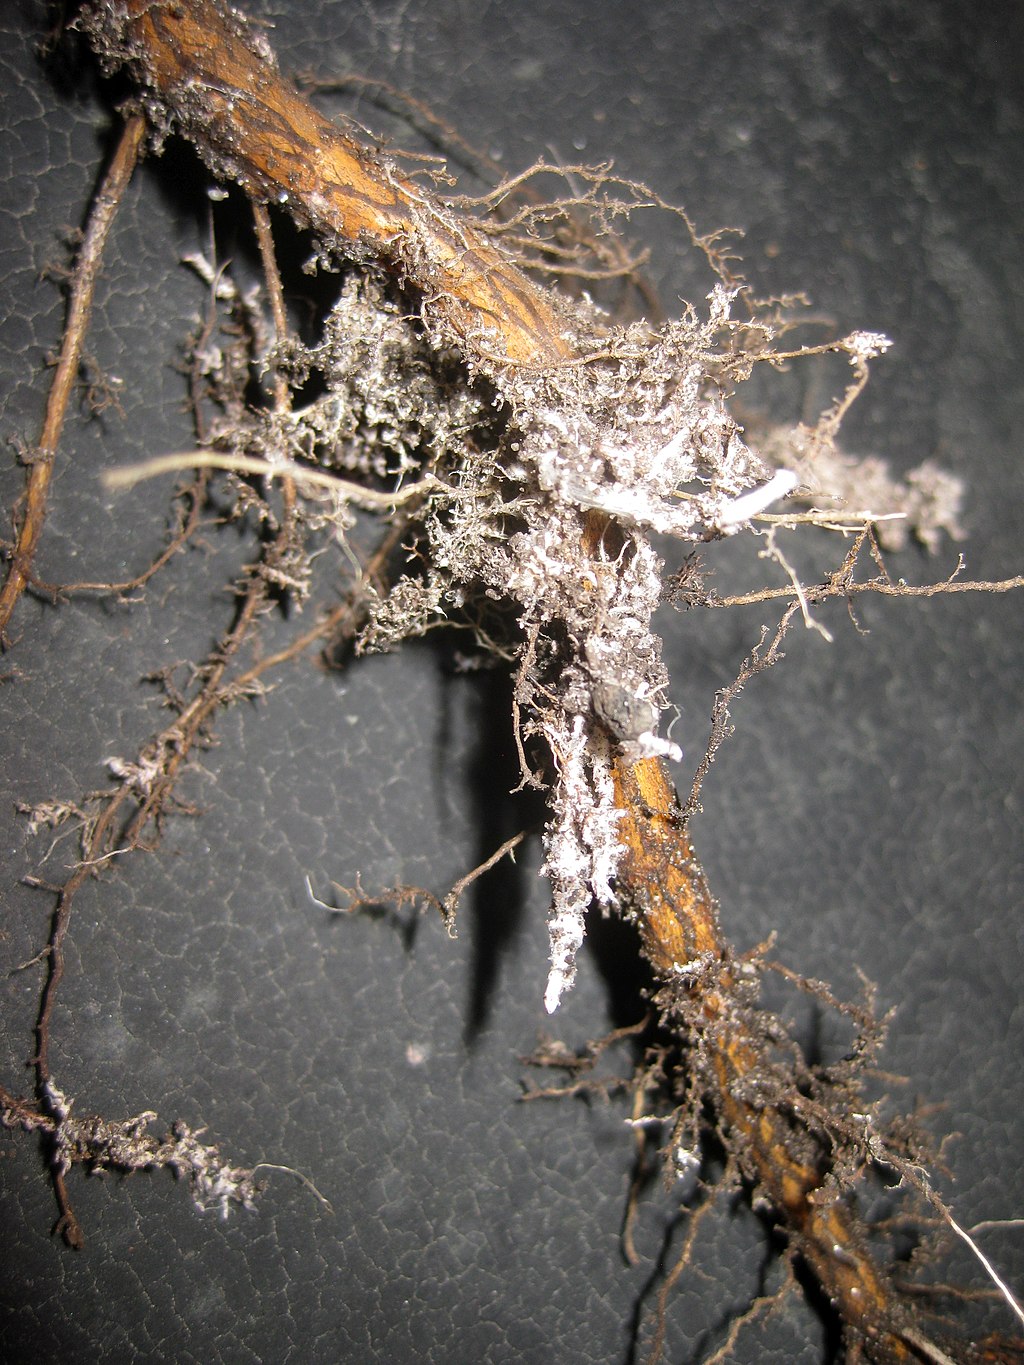 mycorrhizae